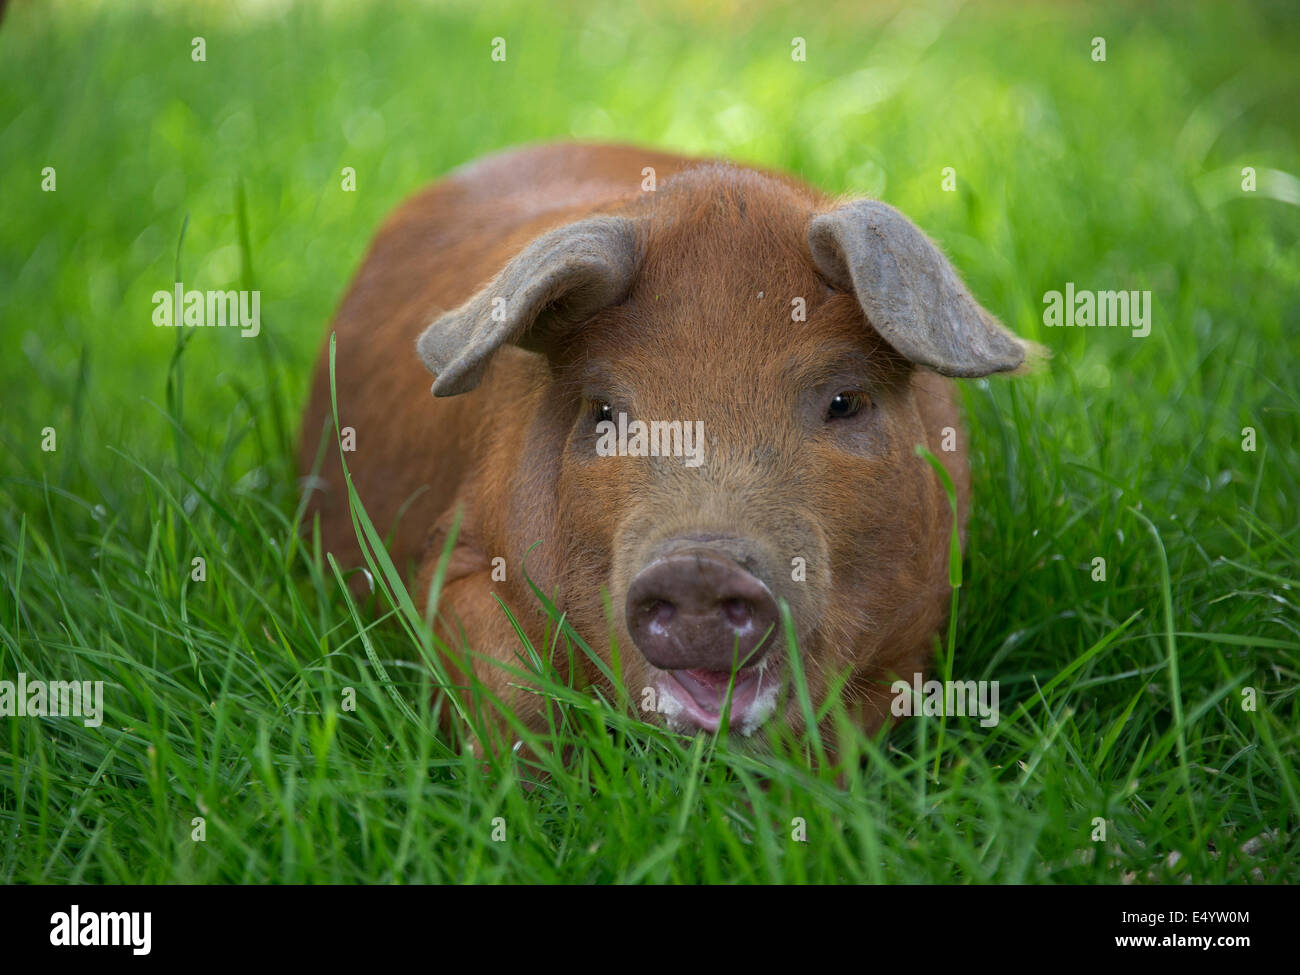 Oxford Sandy et cochons noirs,conservé au pays pour leur viande pour l'alimentation, ces rares-porcs reproducteurs proviennent d'Oxfordshire.une ferme Royaume-uni Banque D'Images